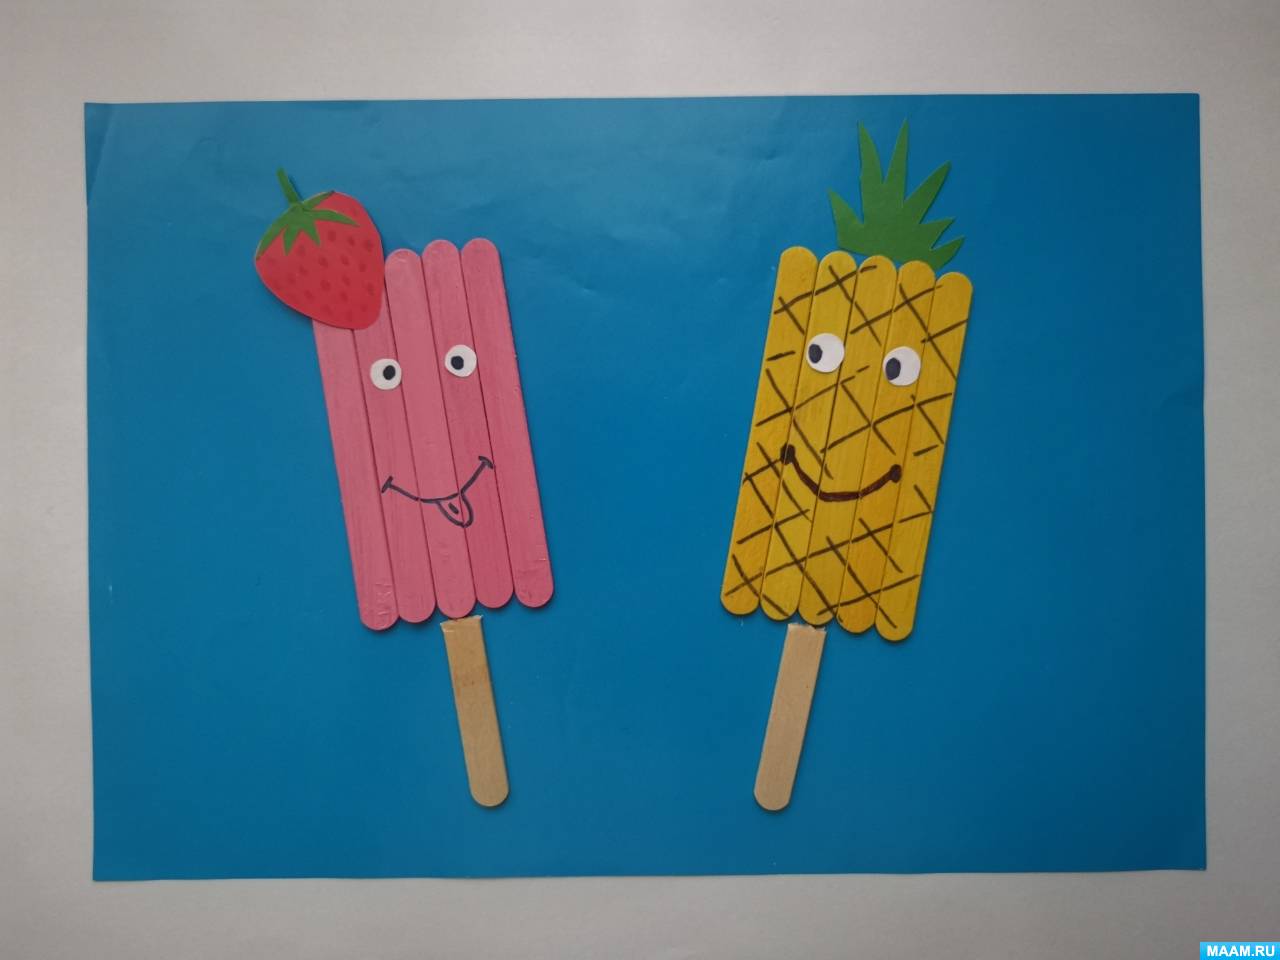 Мастер-класс по аппликации с использованием палочек от мороженого «Забавное эскимо»